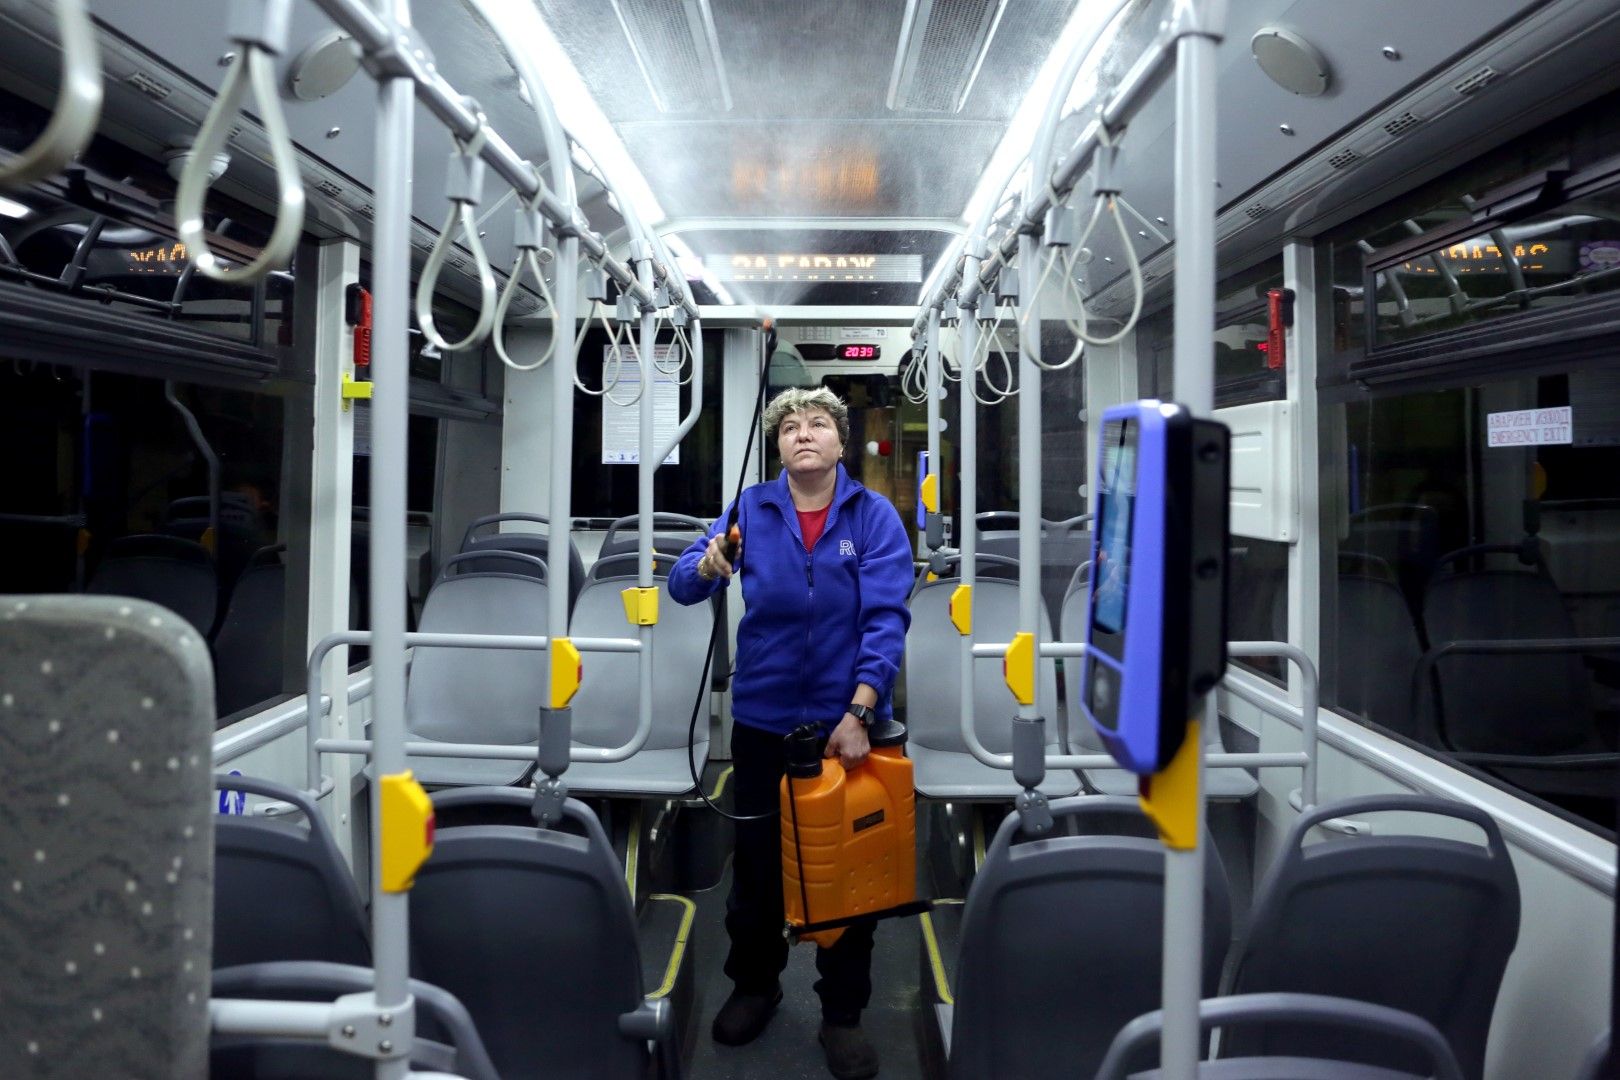 Допълнителна дезинфекция на превозните средства на градския транспорт, както и на метростанциите в София. Допълнително се обработват с дезинфектанти парапети, седалки и места, които пътниците докосват с ръцете си